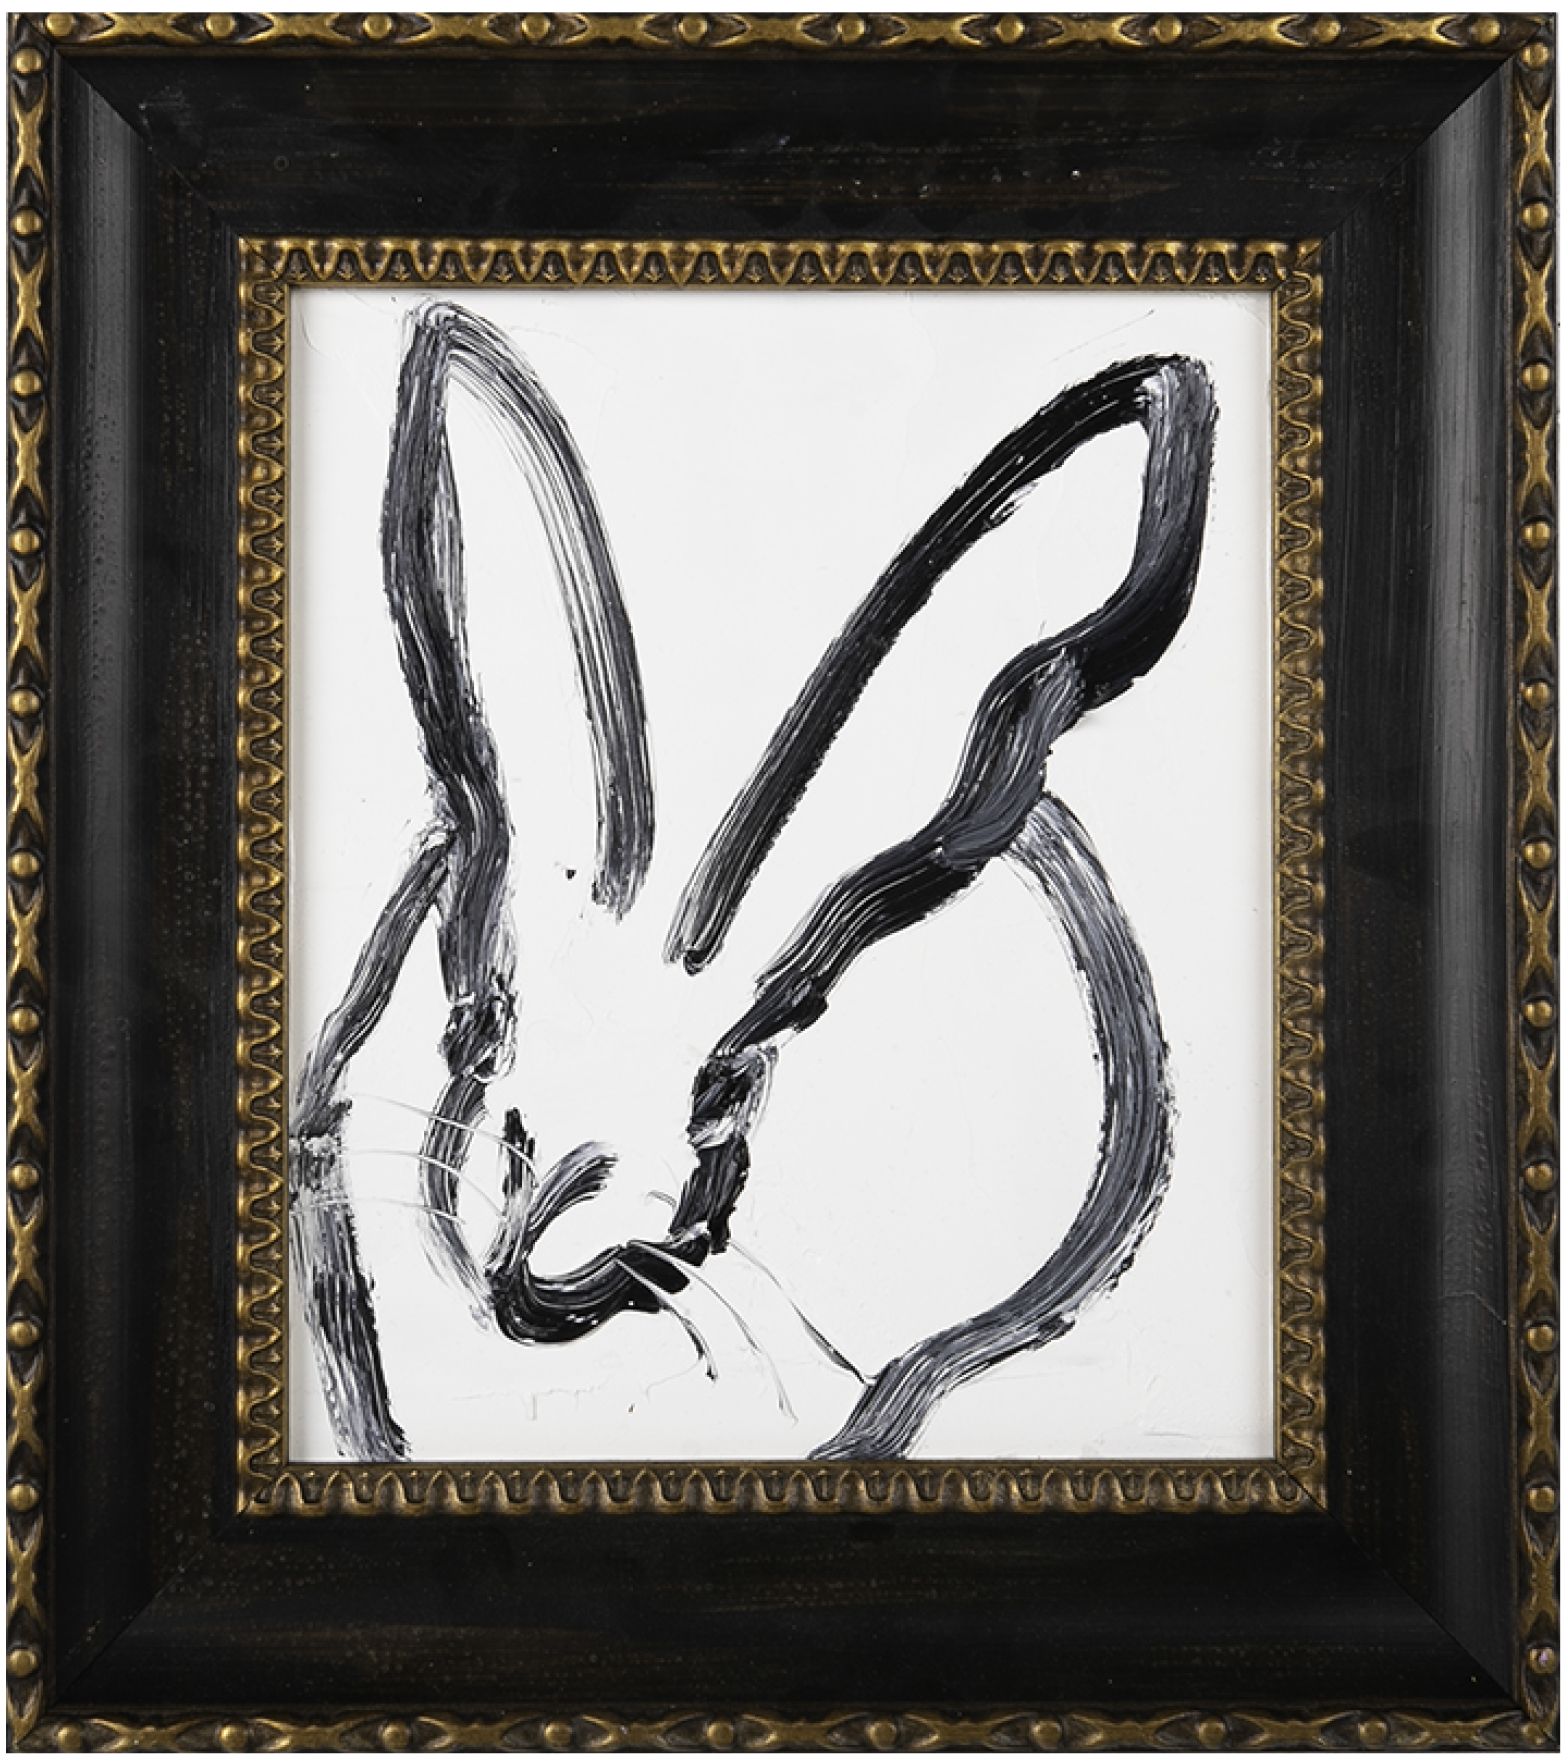 Brenda(white bunny LD0001), 2019, oil on wood, 10 x 8